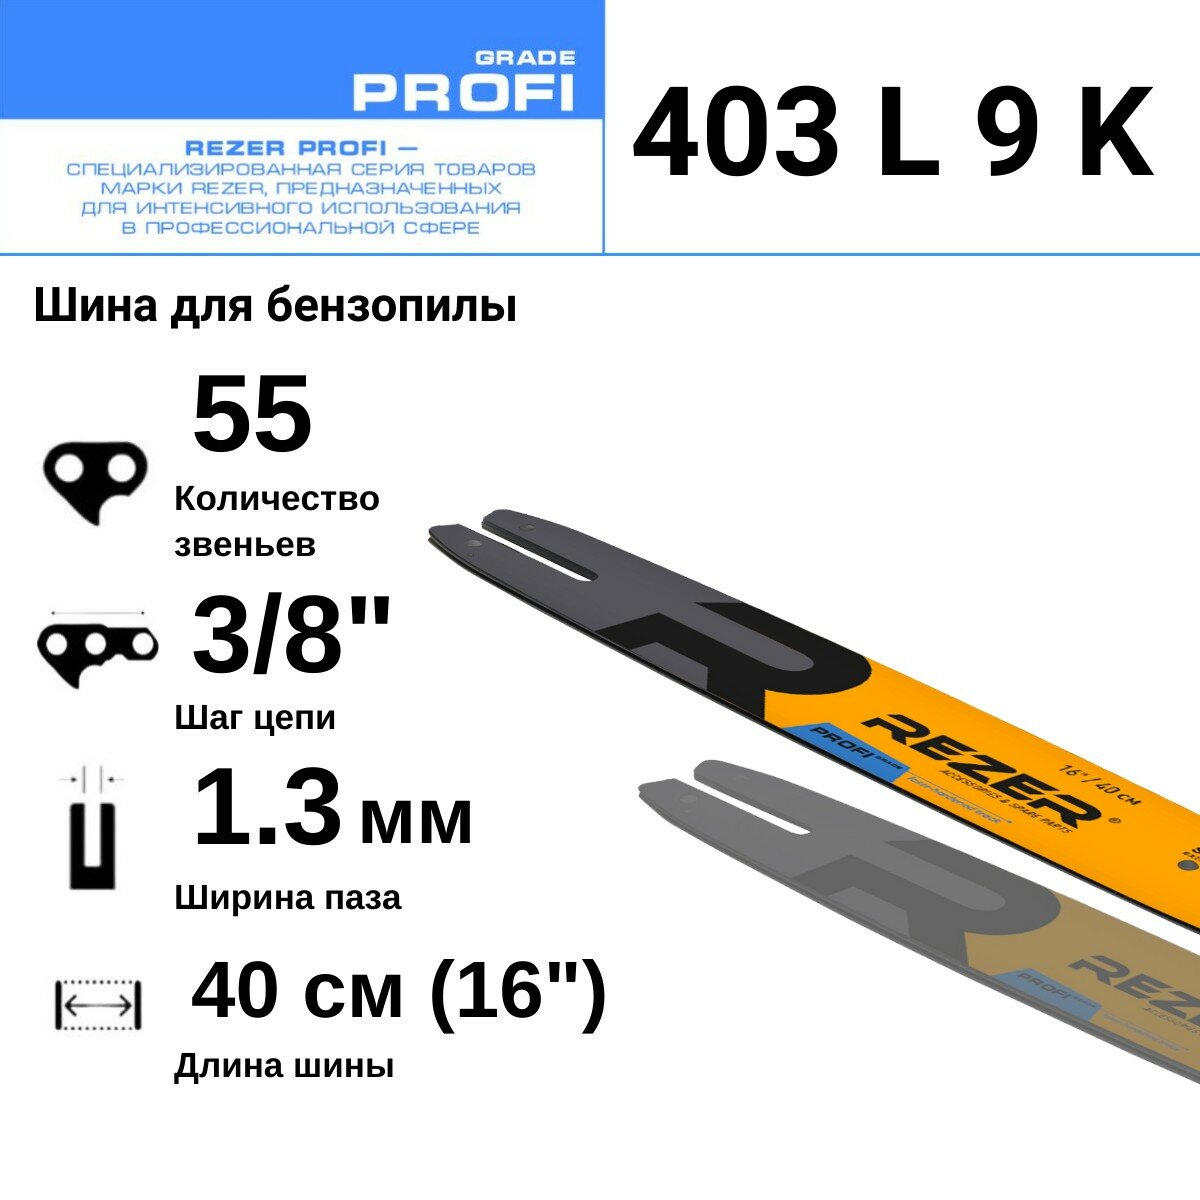 Rezer PROFI 403 L 9 K Шина для бензопилы STIHL (Штиль) MS 180, 210, 230, 250, 55 звеньев, длина шины 16"( 40 см) , шаг 3/8", ширина паза 1.3 мм